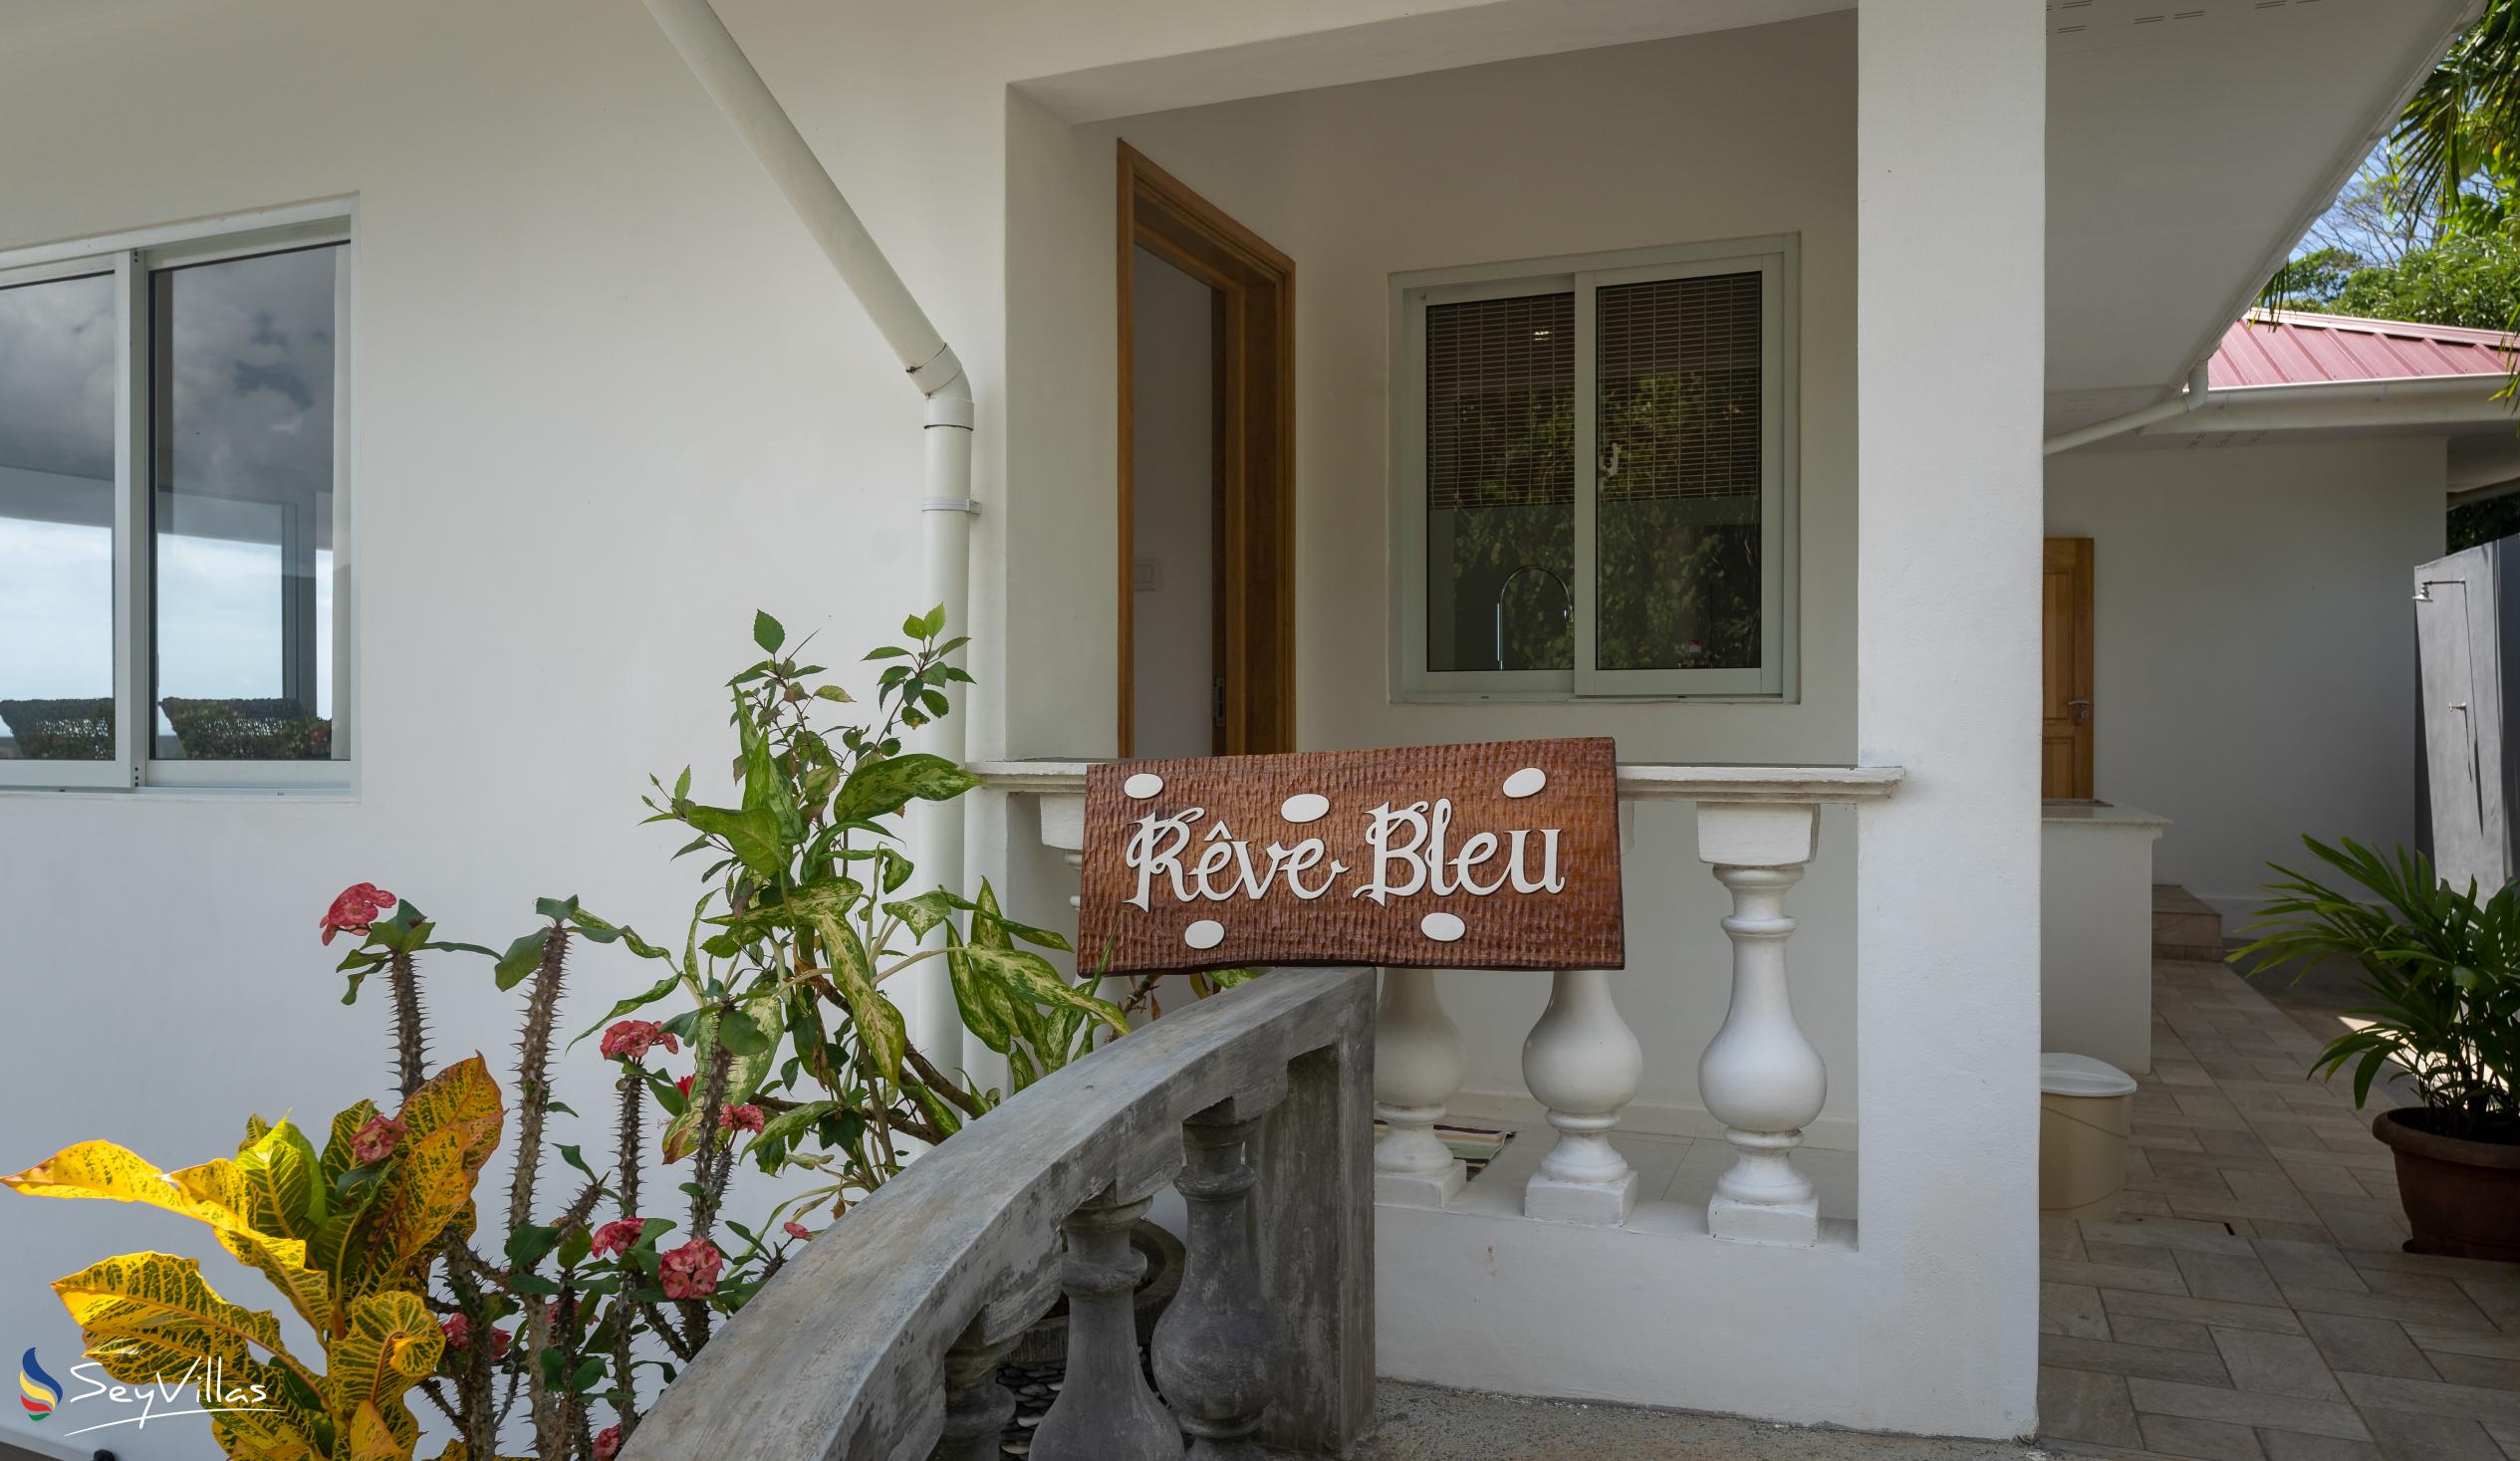 Foto 9: Reve Bleu - Aussenbereich - Mahé (Seychellen)